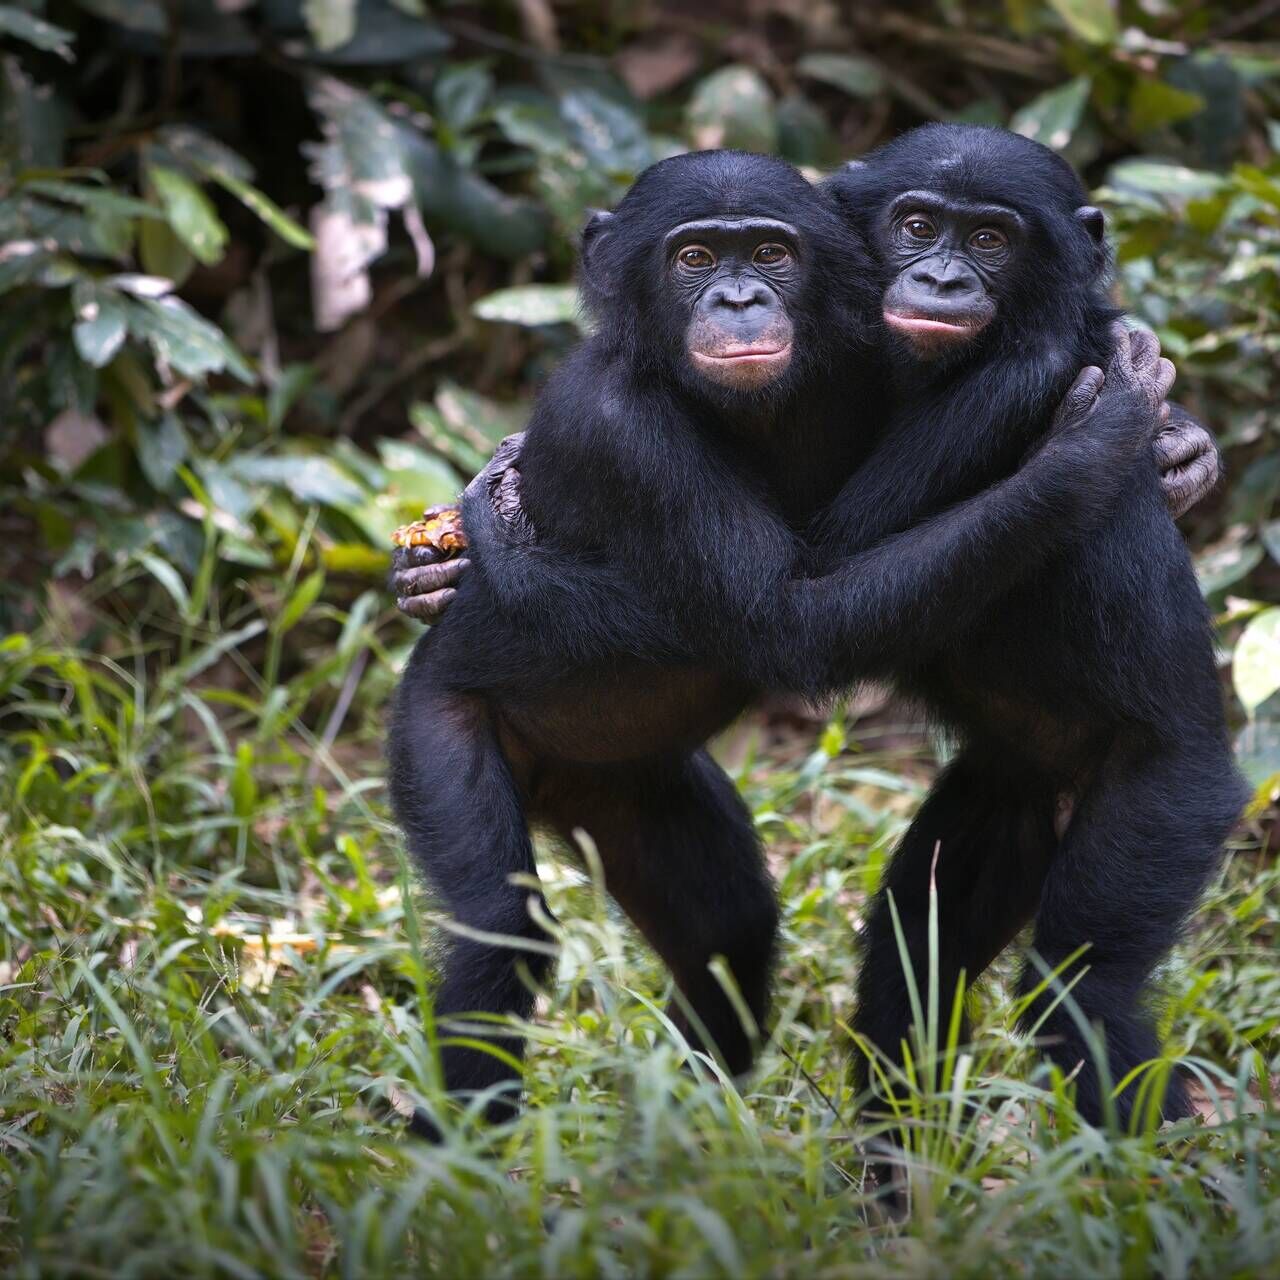 Πίθηκοι: σύμφωνα με ορισμένους επιστήμονες, ο όρος Homo Sapiens είναι ανεπαρκής και τα ανθρώπινα όντα θα πρέπει να ταξινομηθούν εκ νέου στο γένος Pan, όπως ο κοινός χιμπατζής και ο μπονόμπο